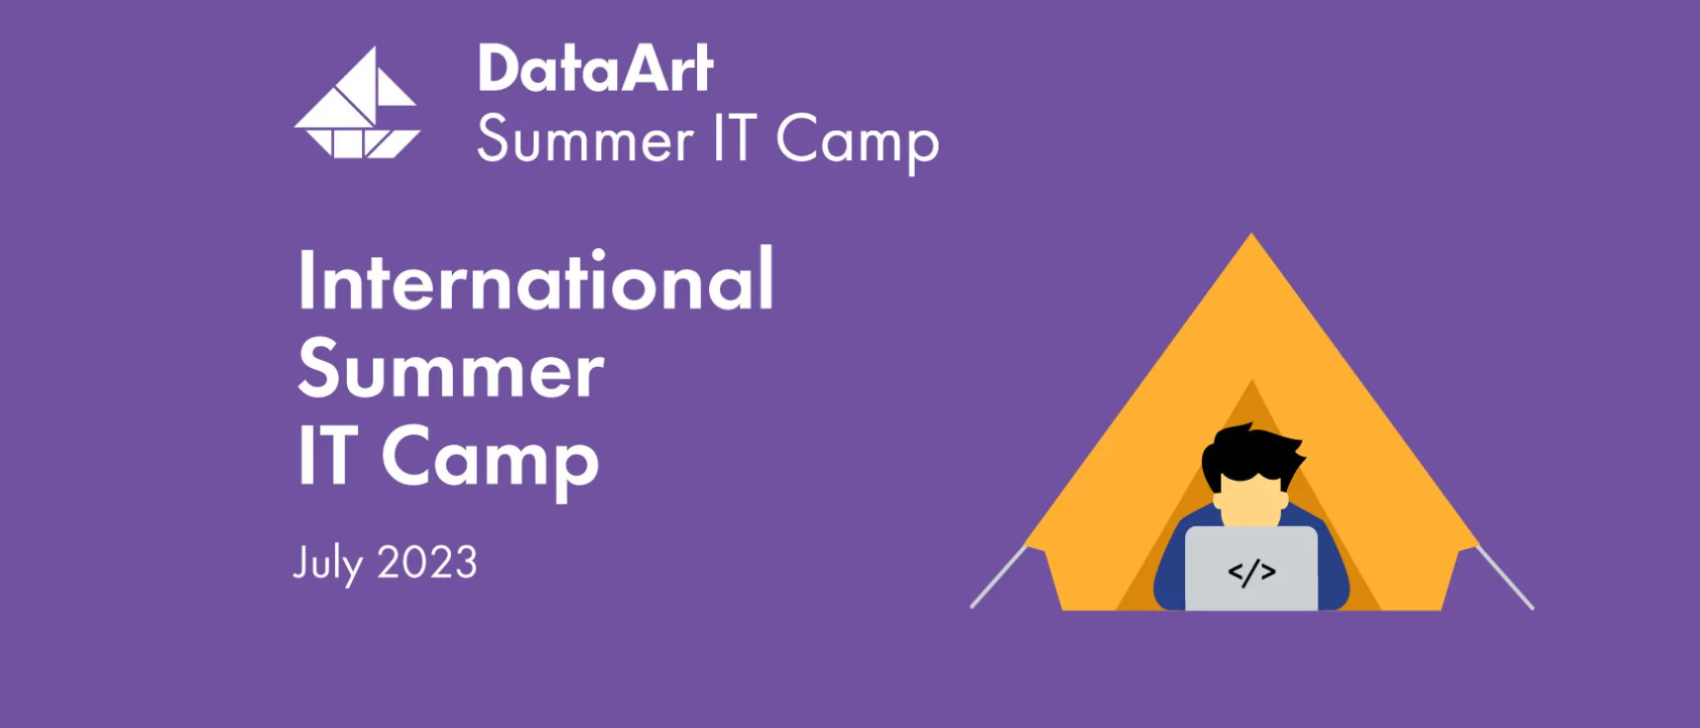 DataArt Summer IT Camp